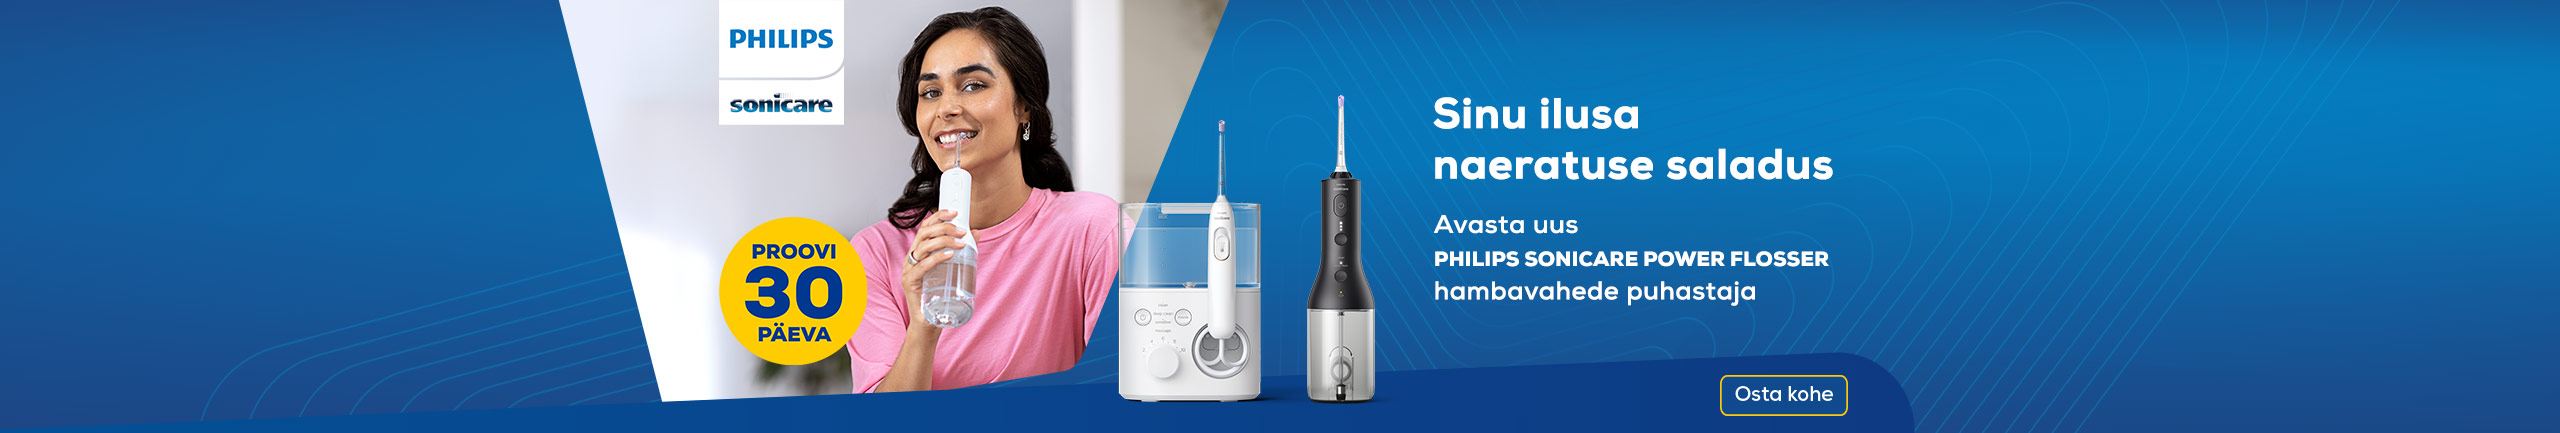 Avasta uus Philips Sonicare Power Flosser hambavahede puhastaja